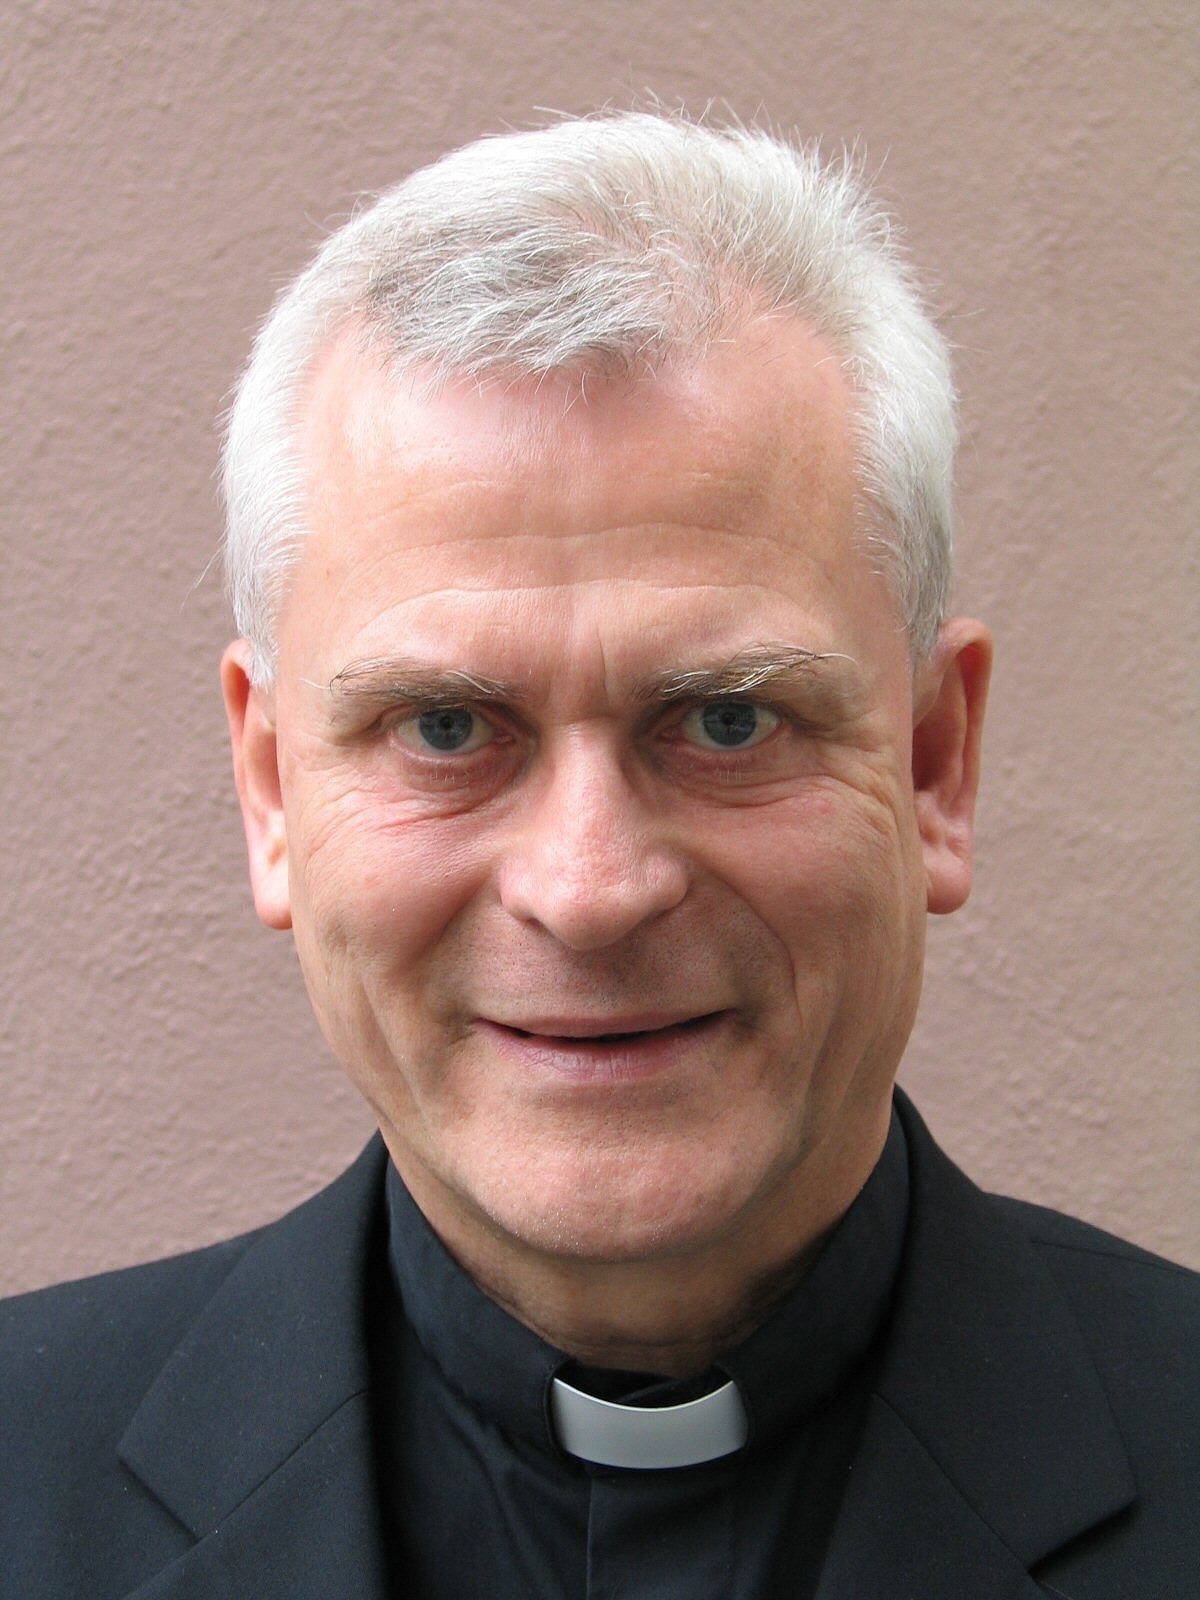 Mainz, 27.10.2009: Am 30. Oktober vollendet Weihbischof Dr. Werner Guballa sein 65. Lebensjahr. (c) Bistum Mainz / Blum